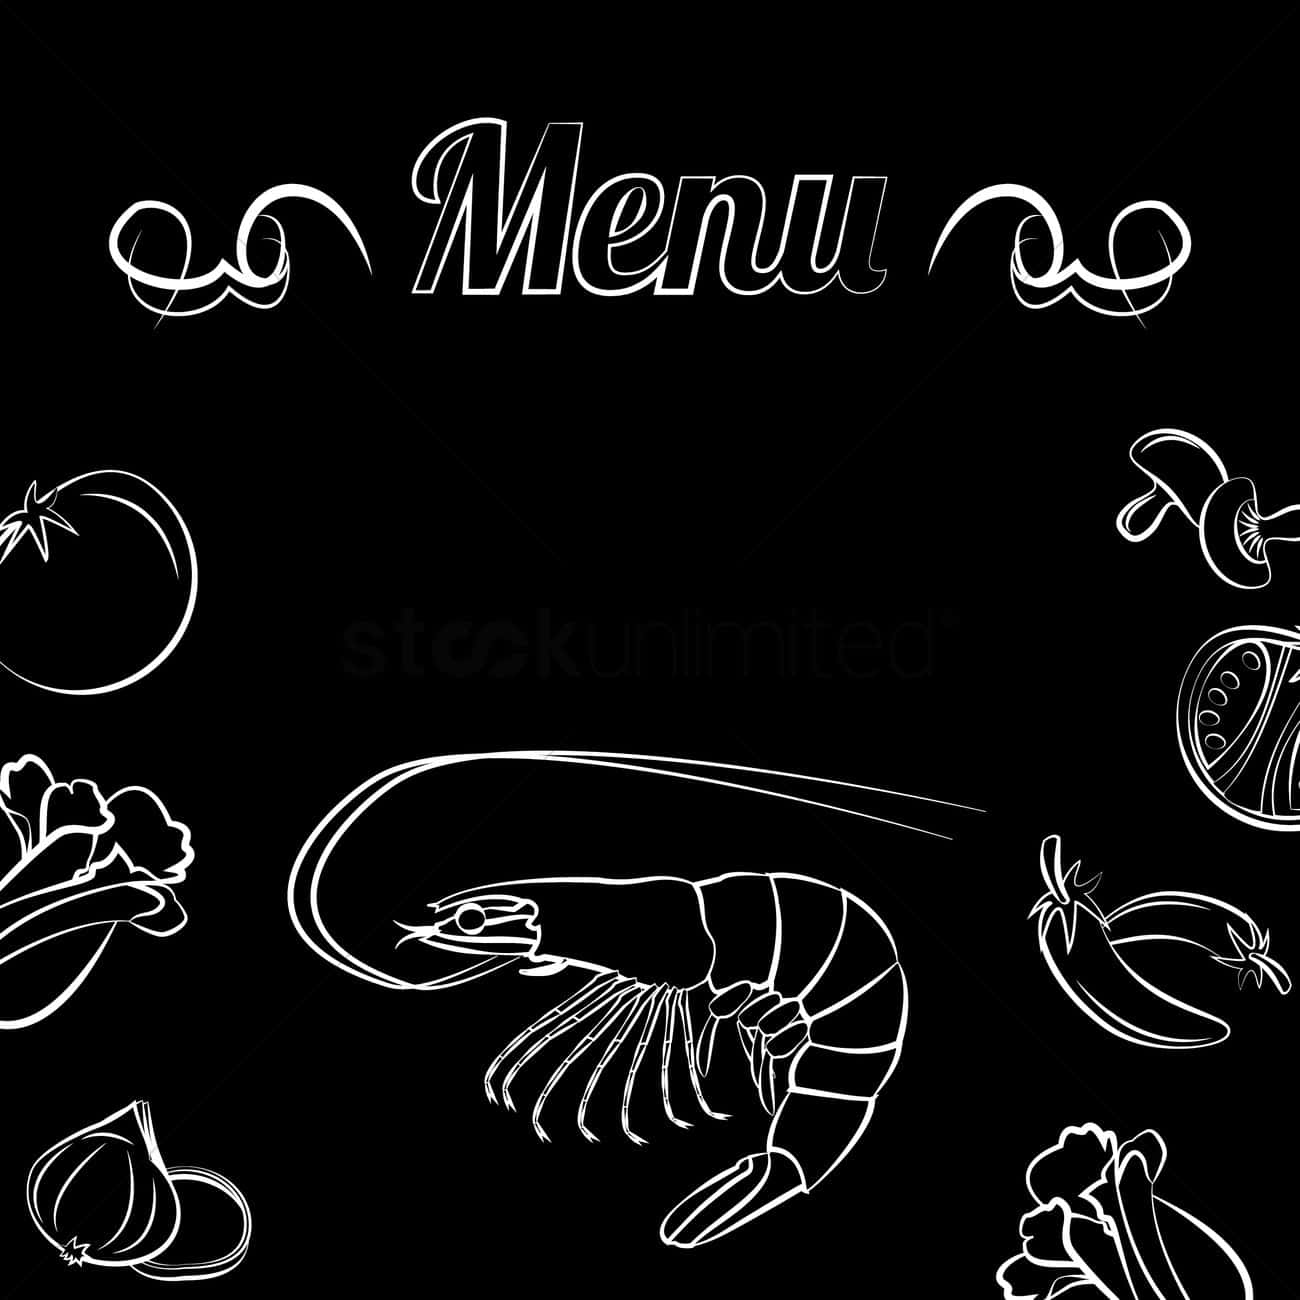 Menu With Shrimp And Vegetables On Black Background